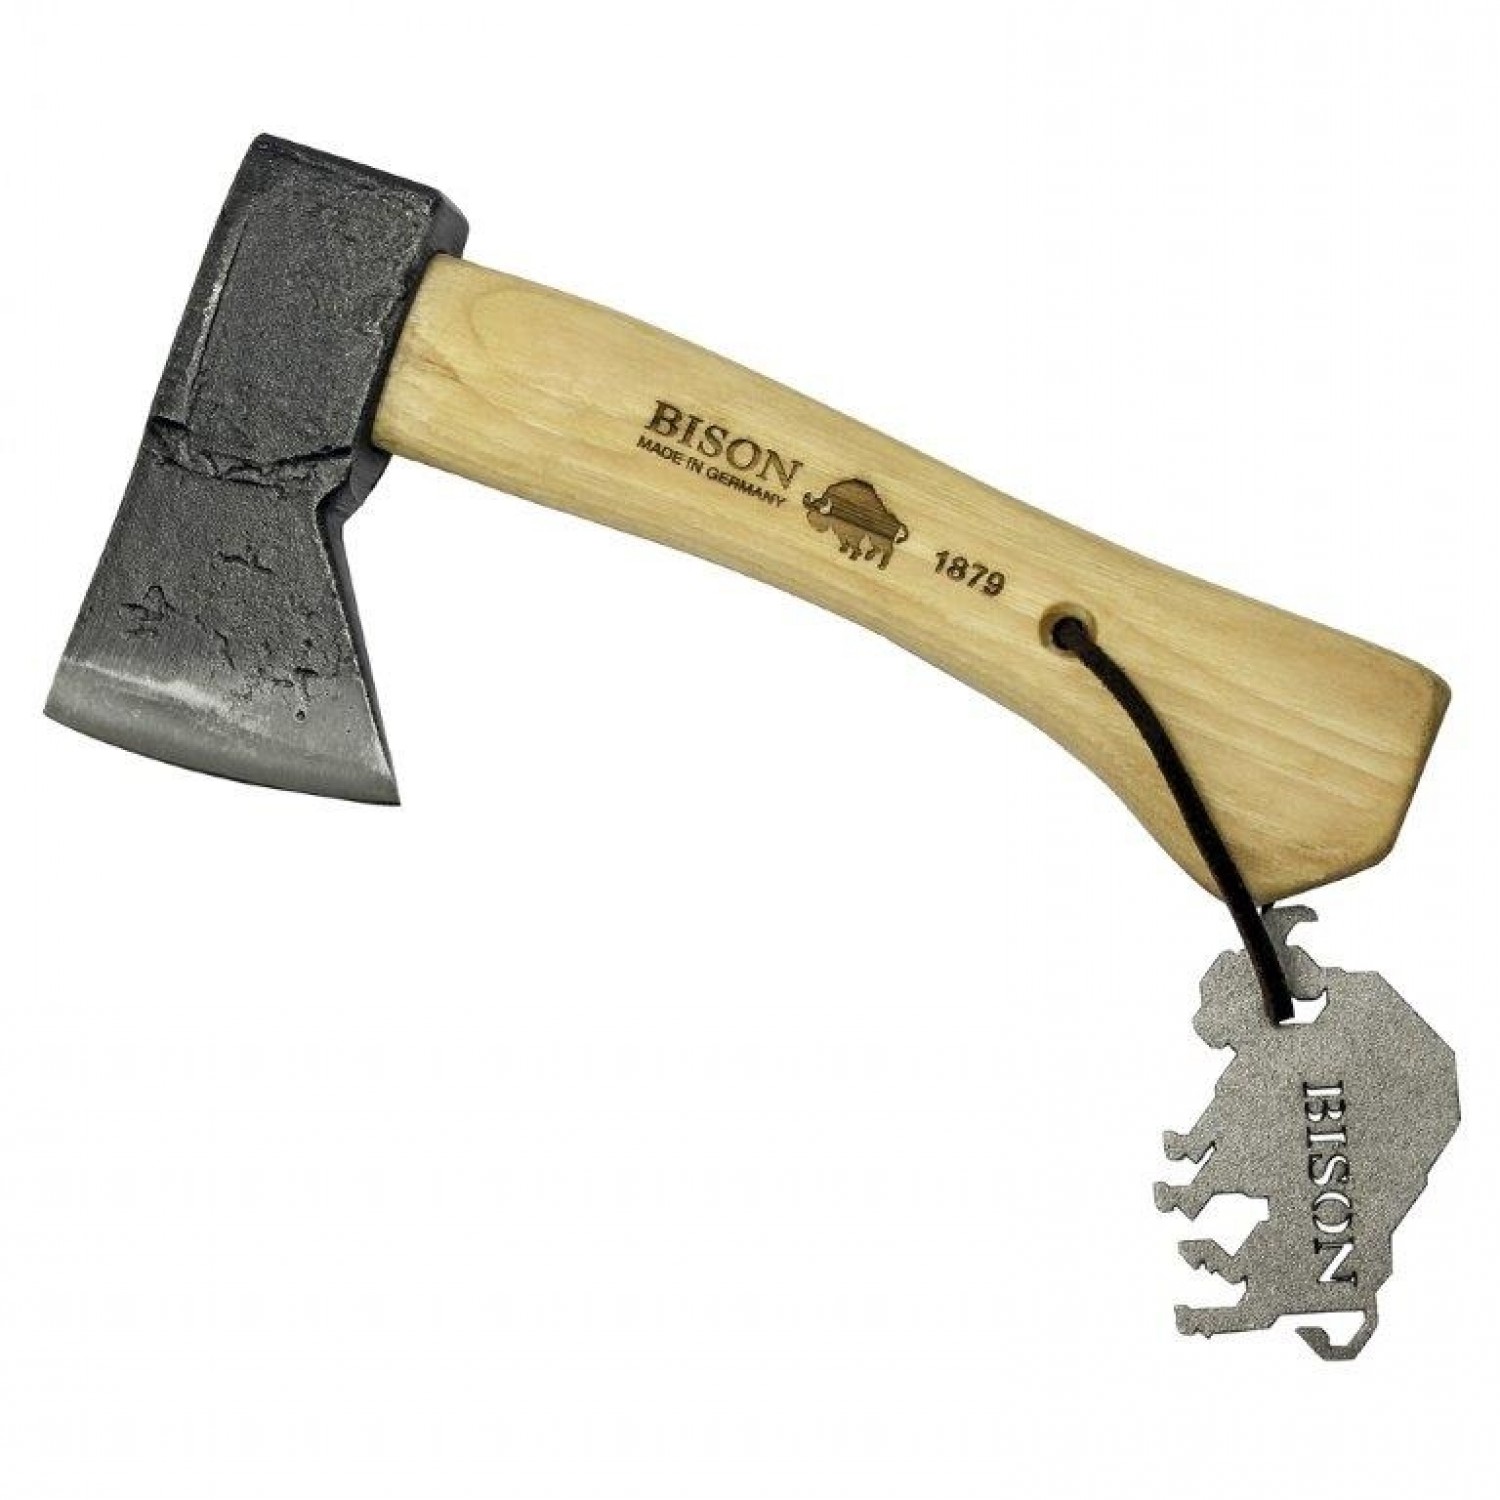 Outdoor Hatchet BISON 1879 - handy axe | Bison